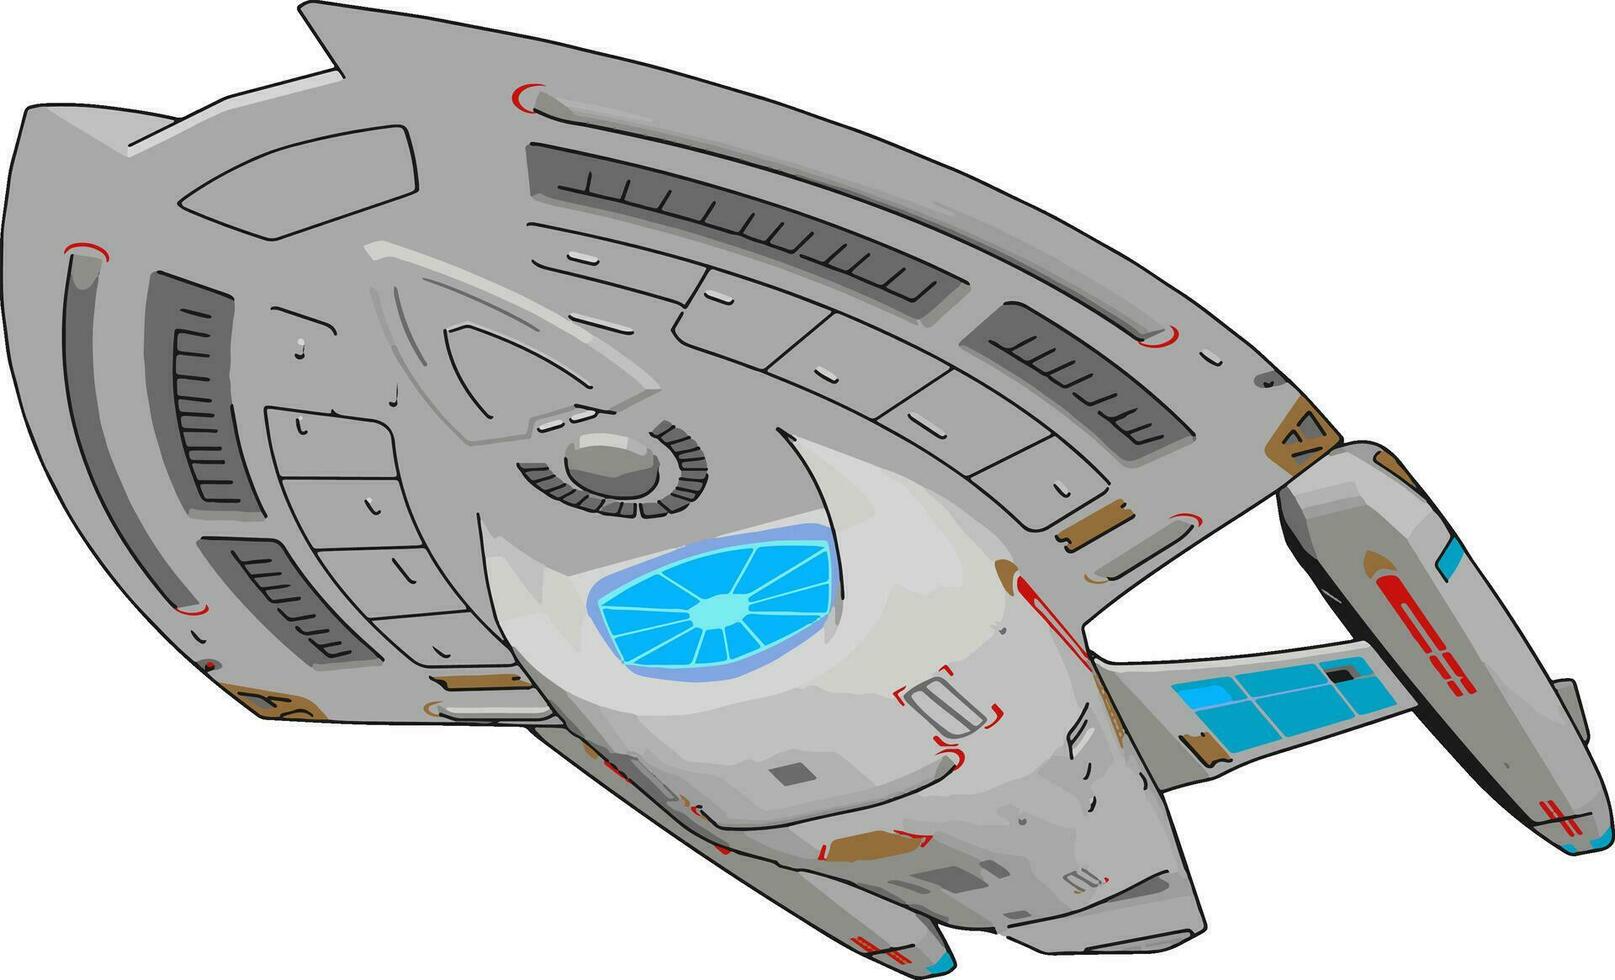 Fantasie Ladung Raumschiff Vektor Illustration auf Weiß Hintergrund